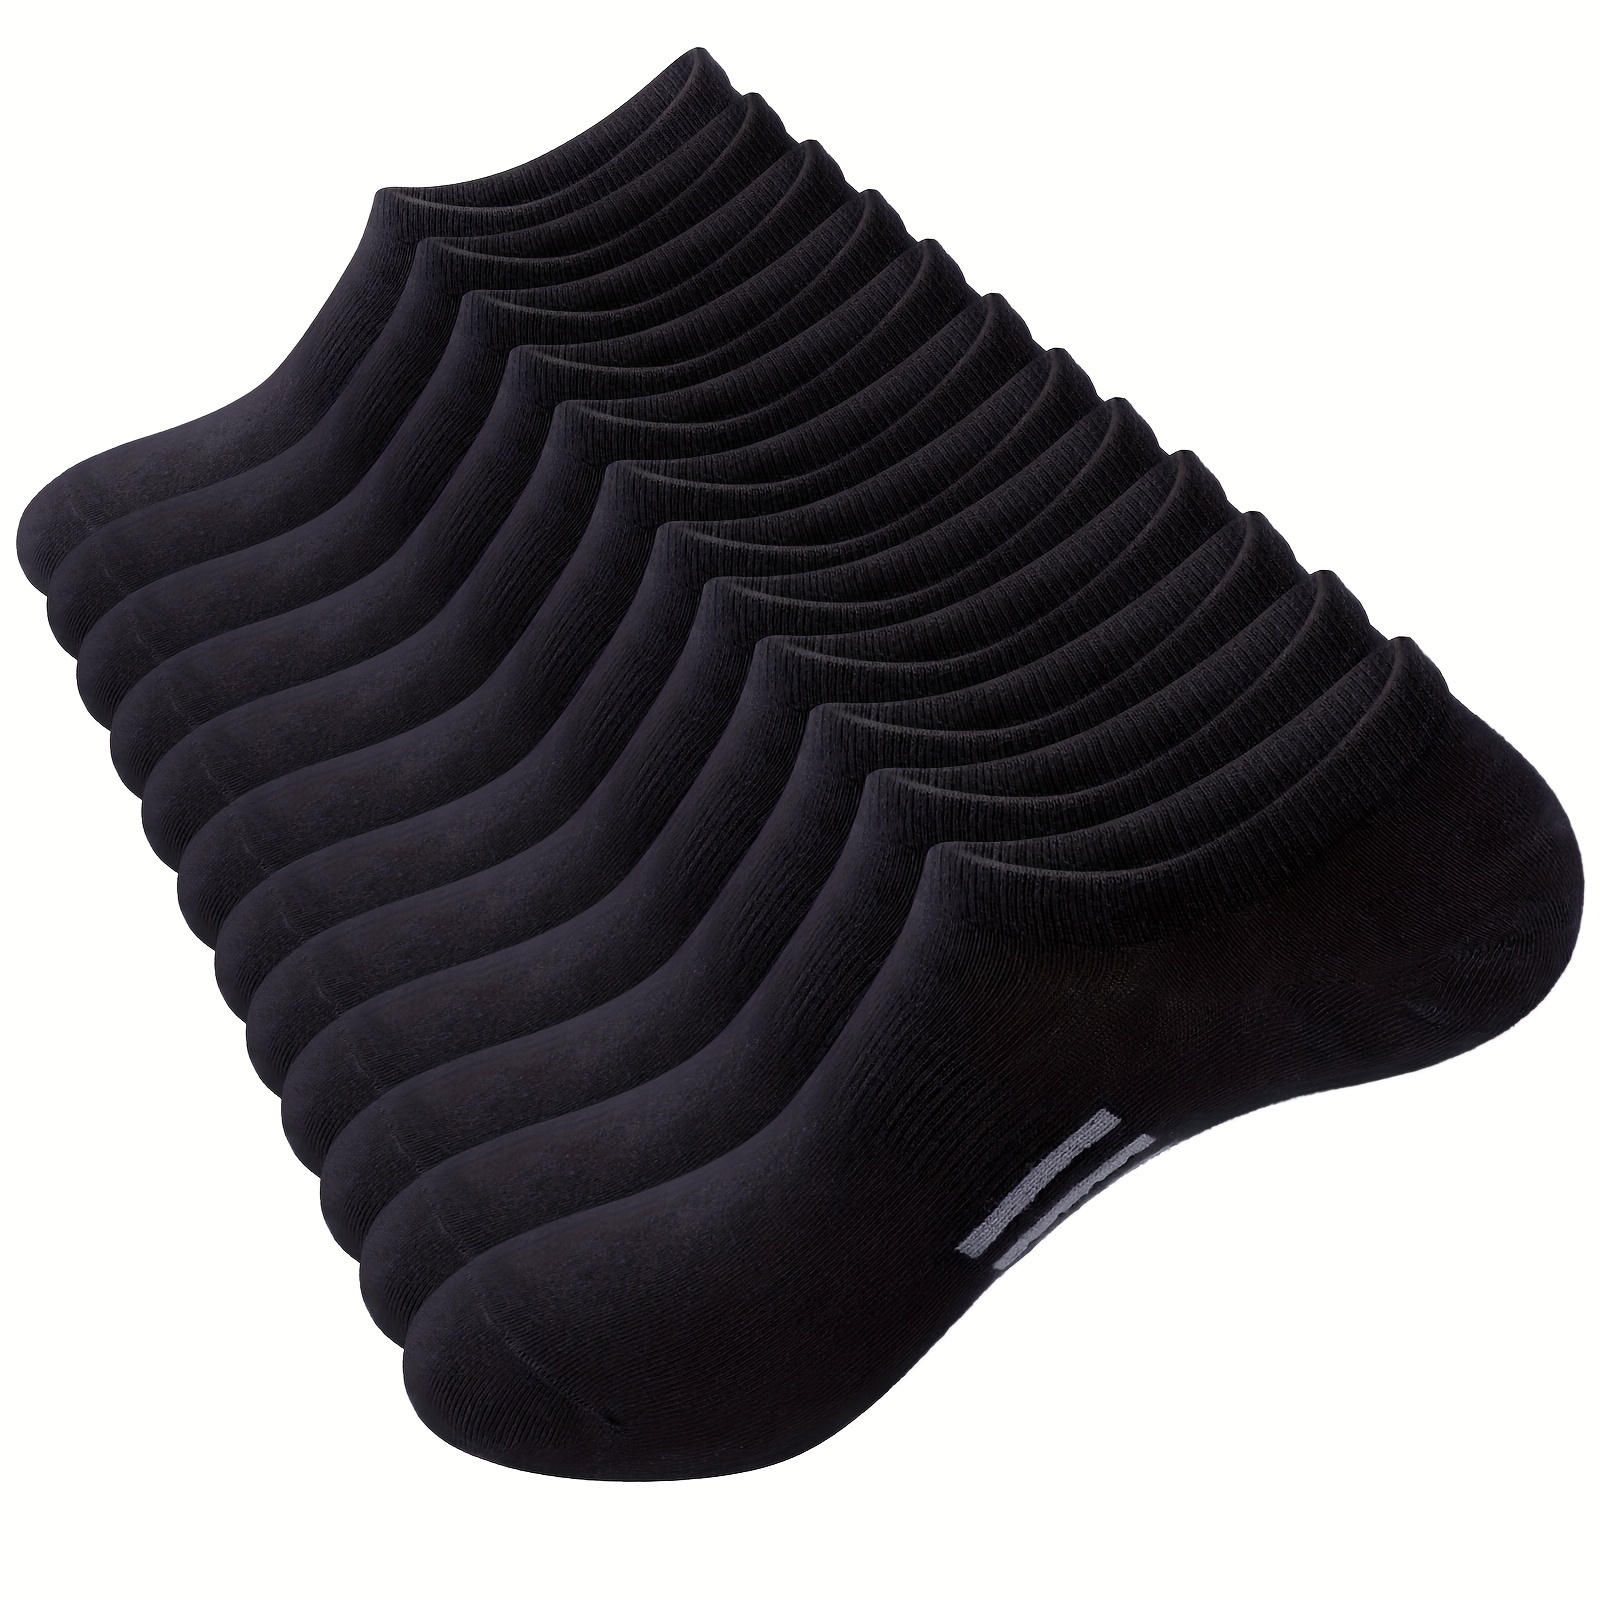 Paquete de 12 pares de calcetines negros para hombres. Talla 12-14